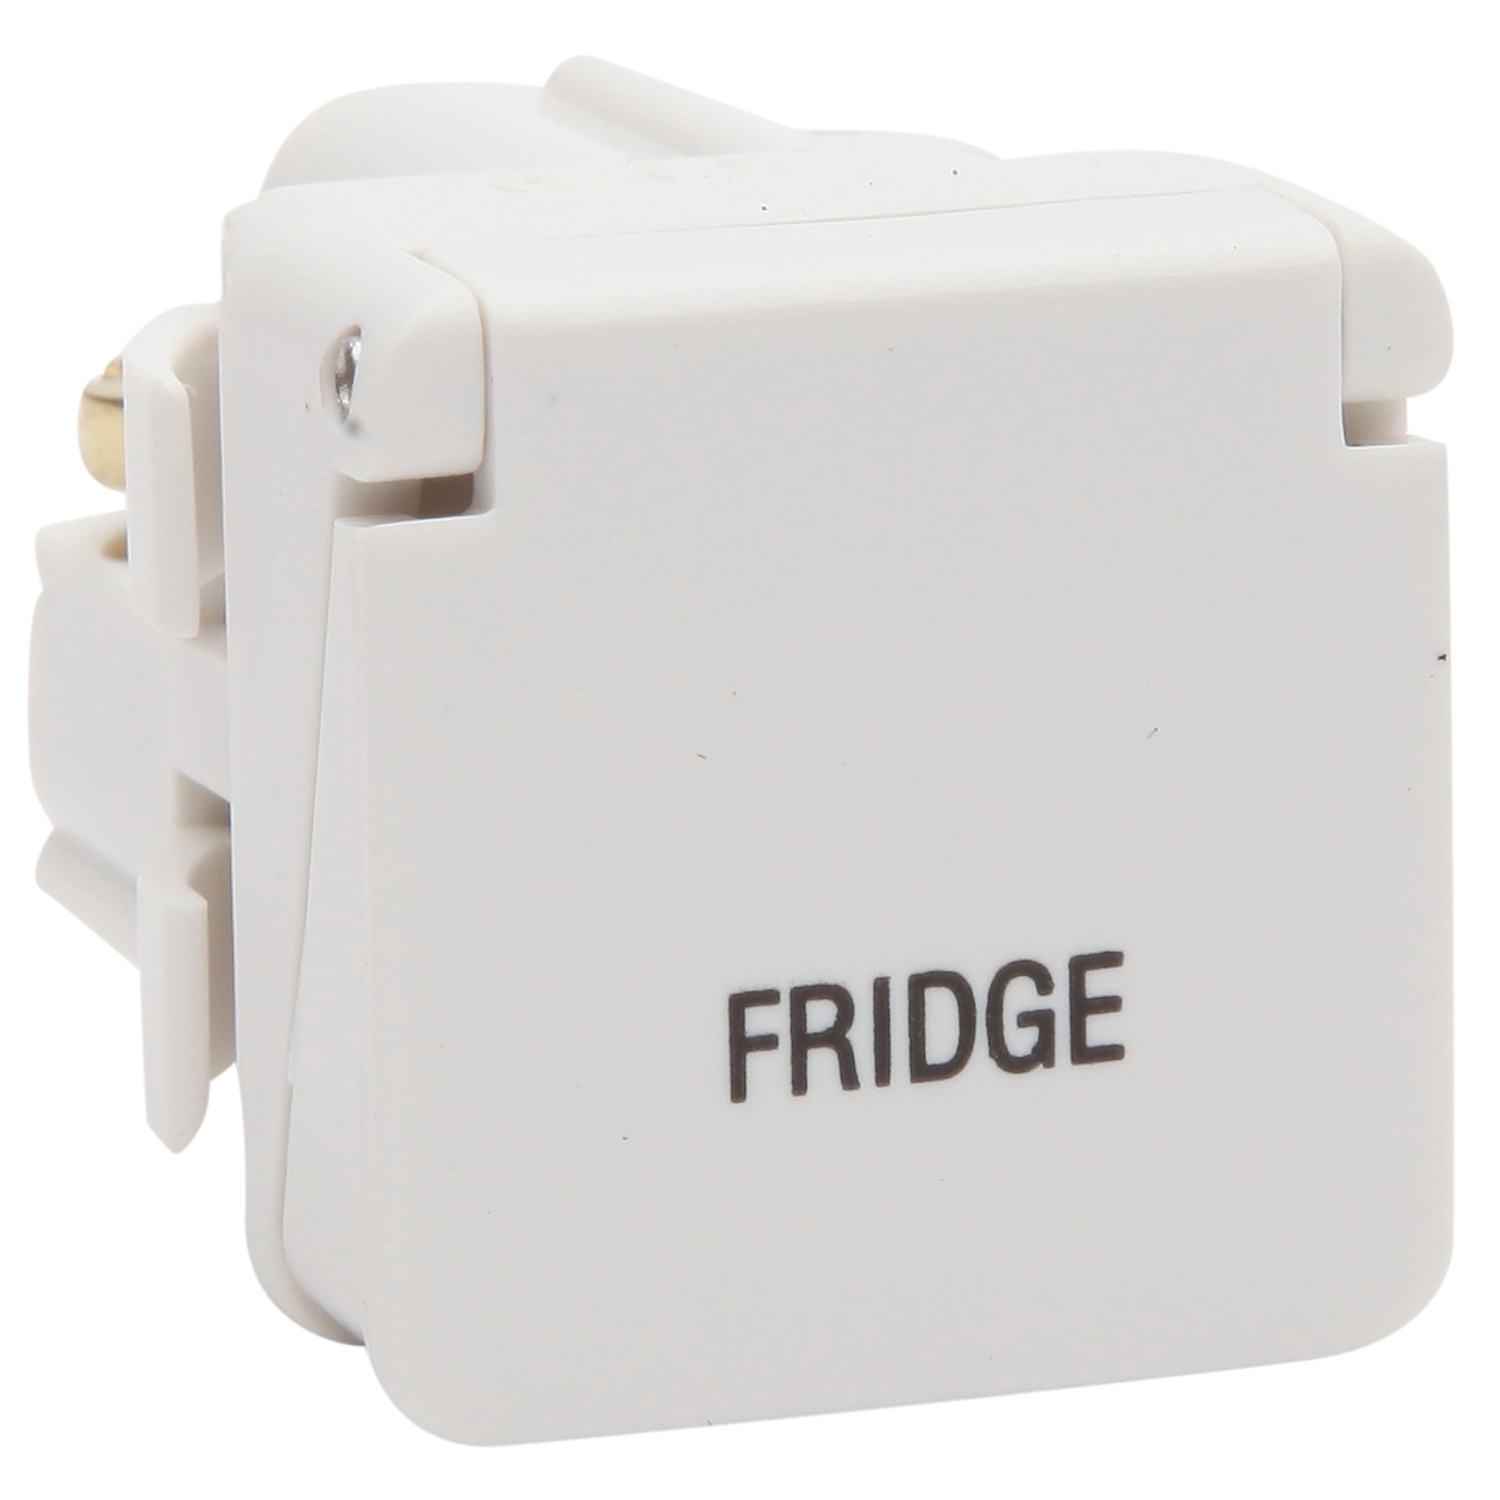 PDL 600 Series - Module Switch 2-Way 16A 1P + Lid FRIDGE - White